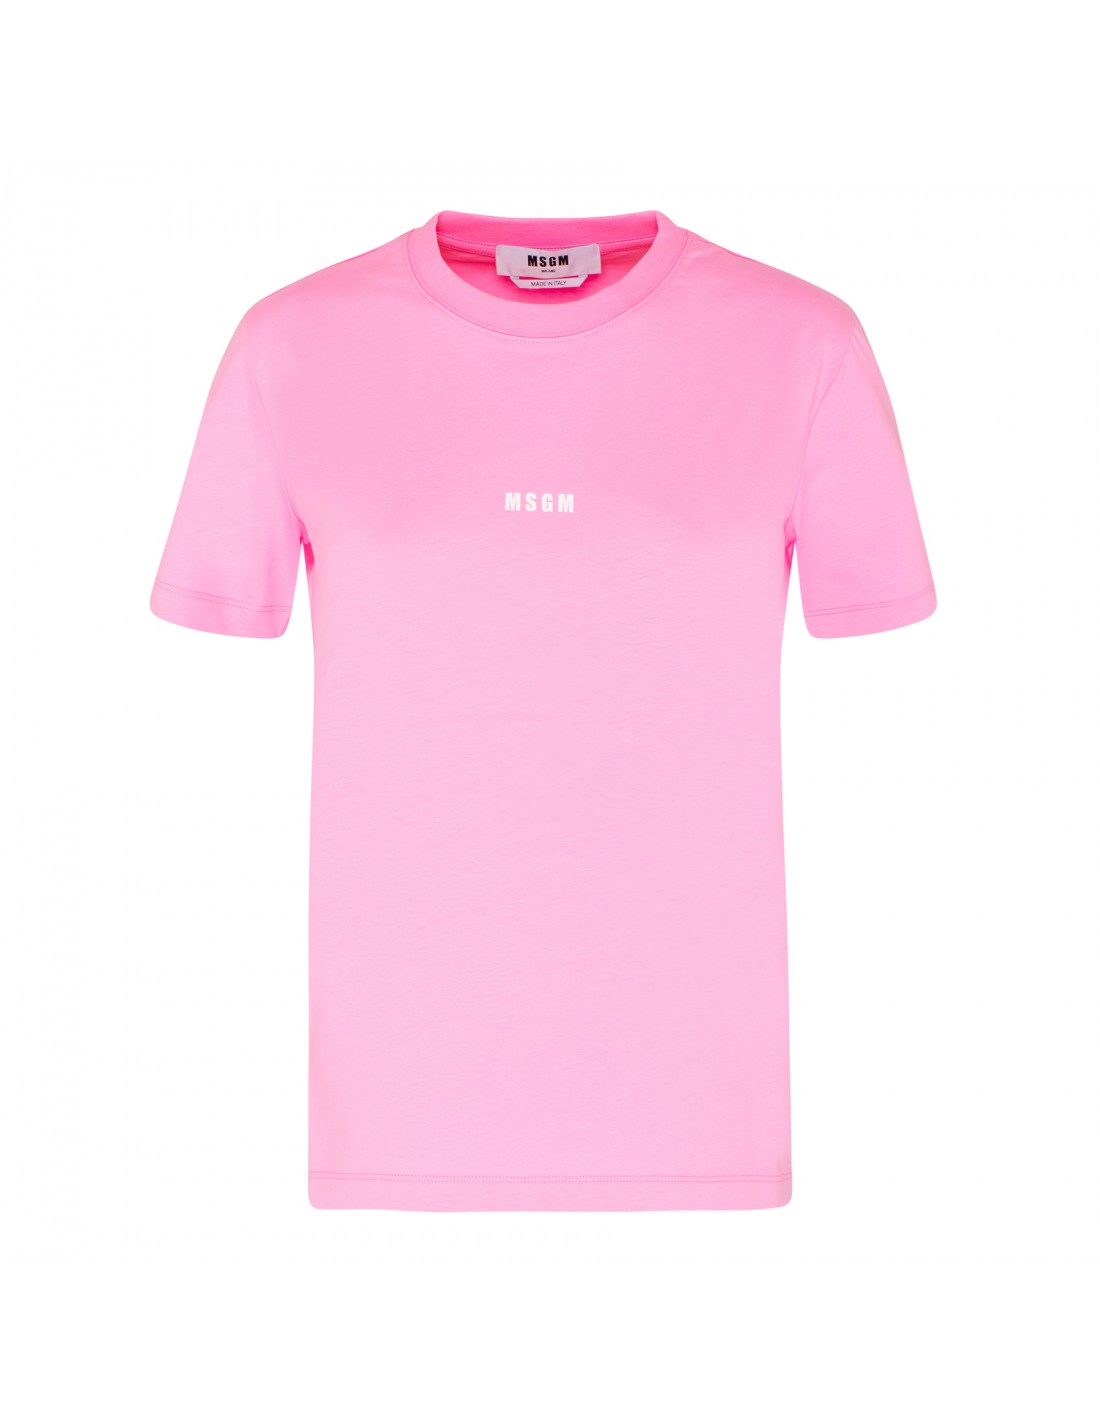 Micro logo pink T-shirt